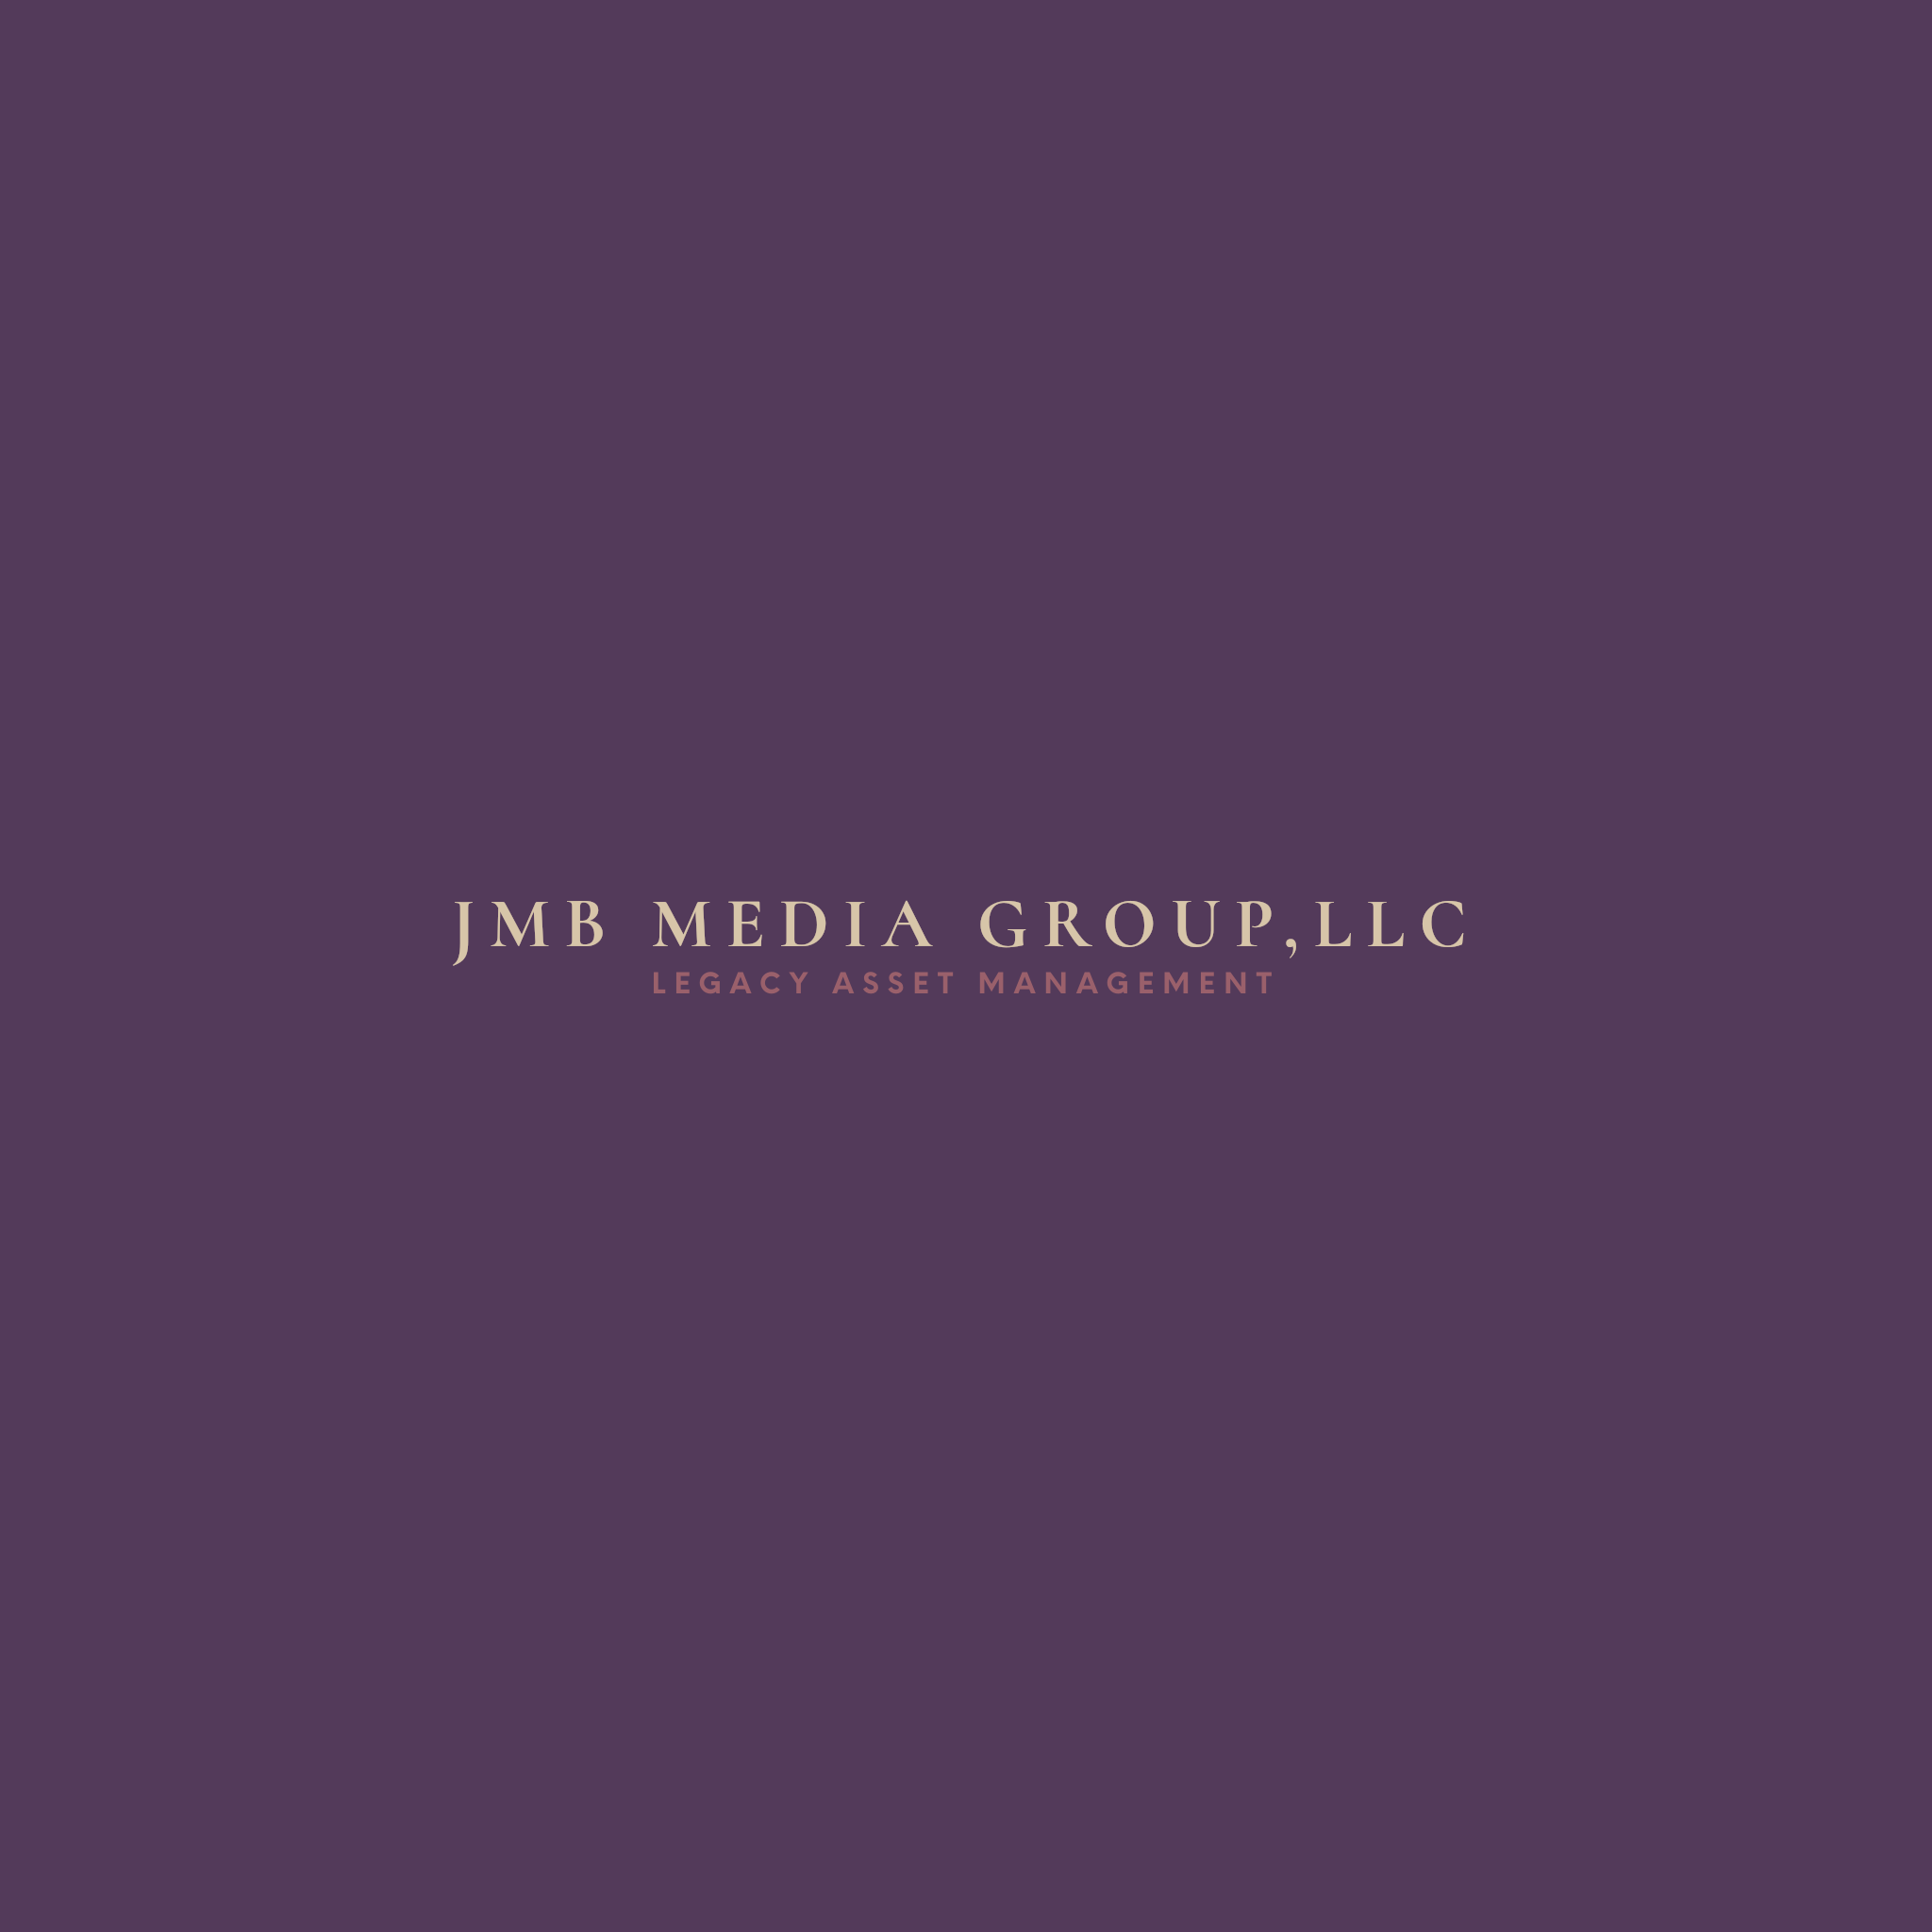 JMB Media Group